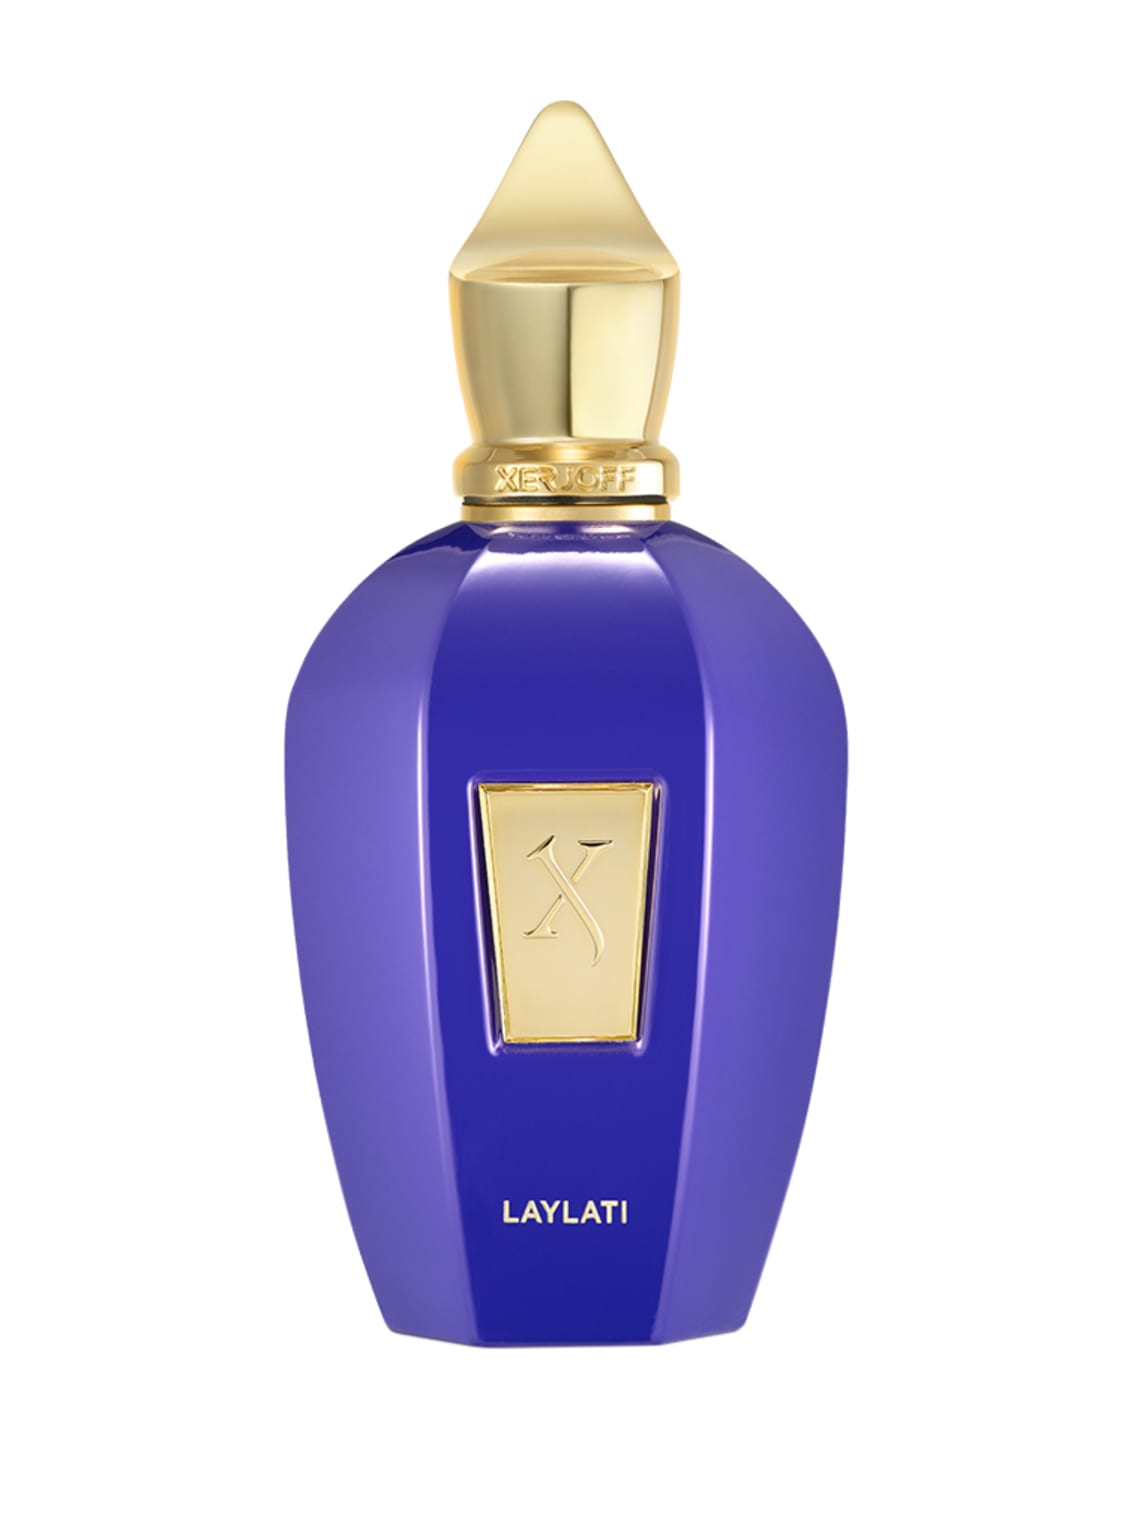 Xerjoff Laylati Eau de Parfum 100 ml von XERJOFF